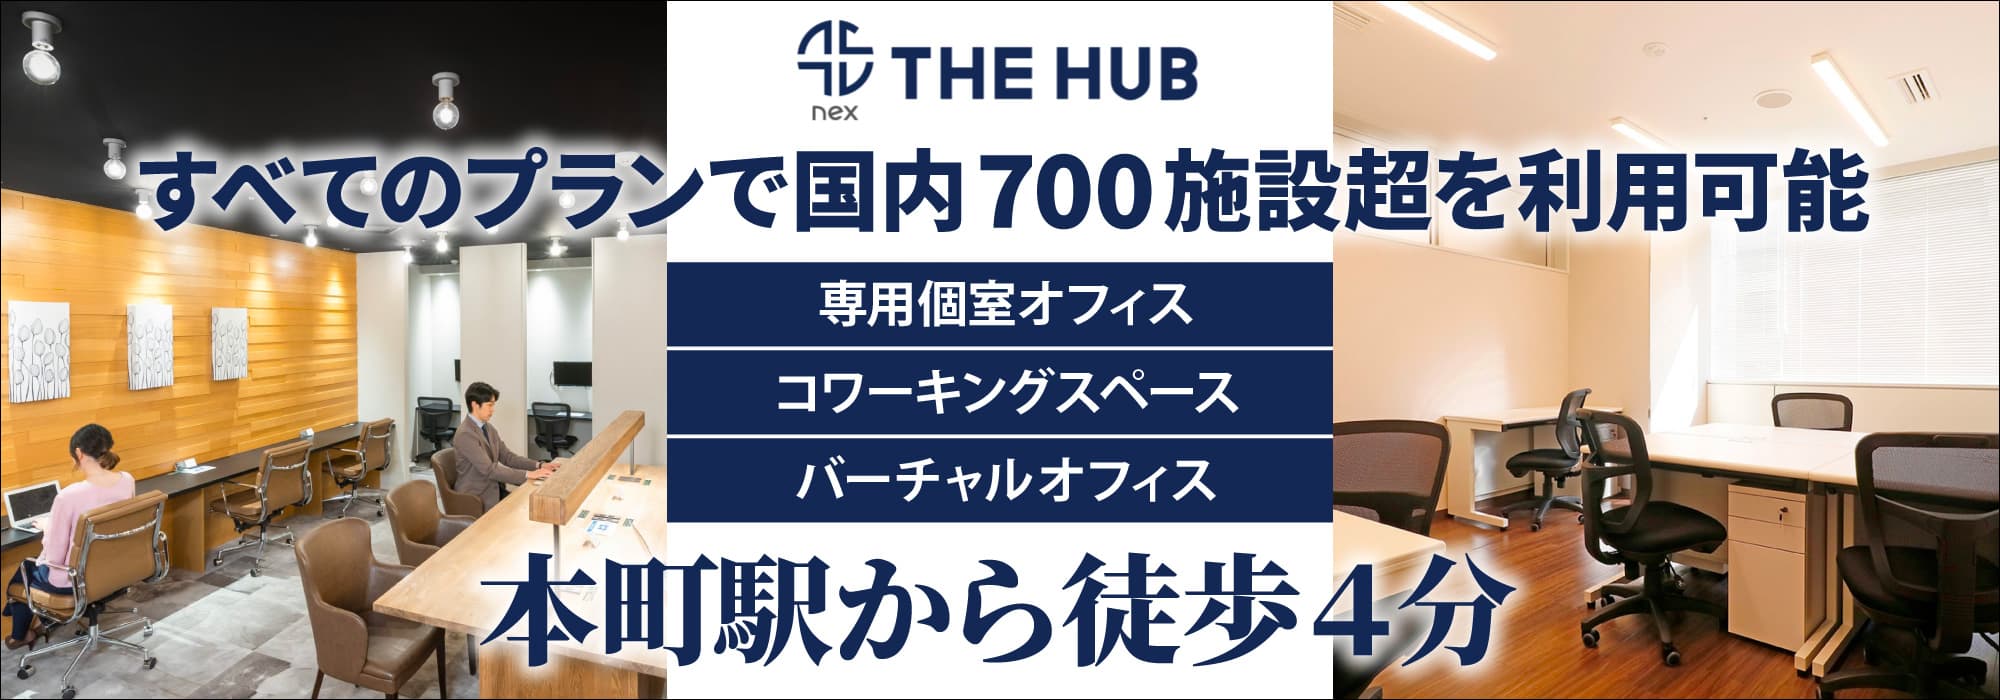 大阪屈指のビジネス街・本町で最高のコストパフォーマンスを誇る大型レンタルオフィス【THE HUB 大阪本町】すべてのプランで国内700施設超を利用可能